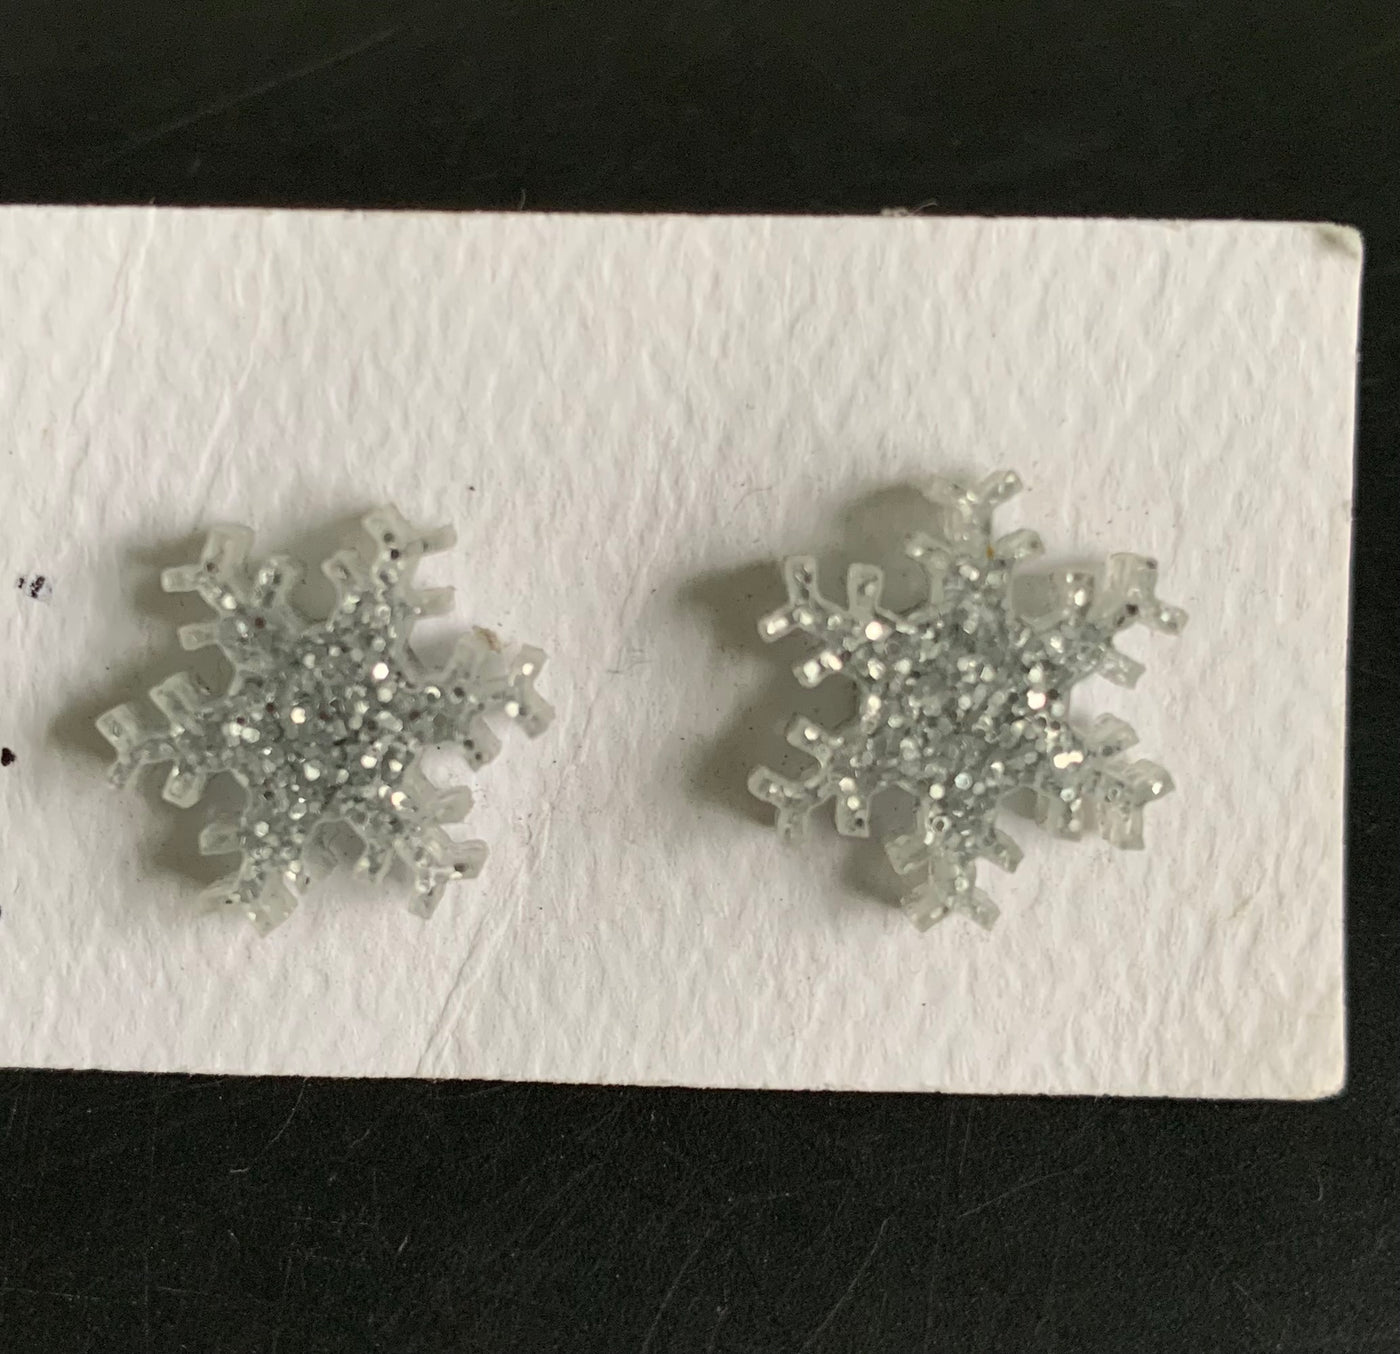 Stud Earrings - Oh Hey Lovely Snowflake